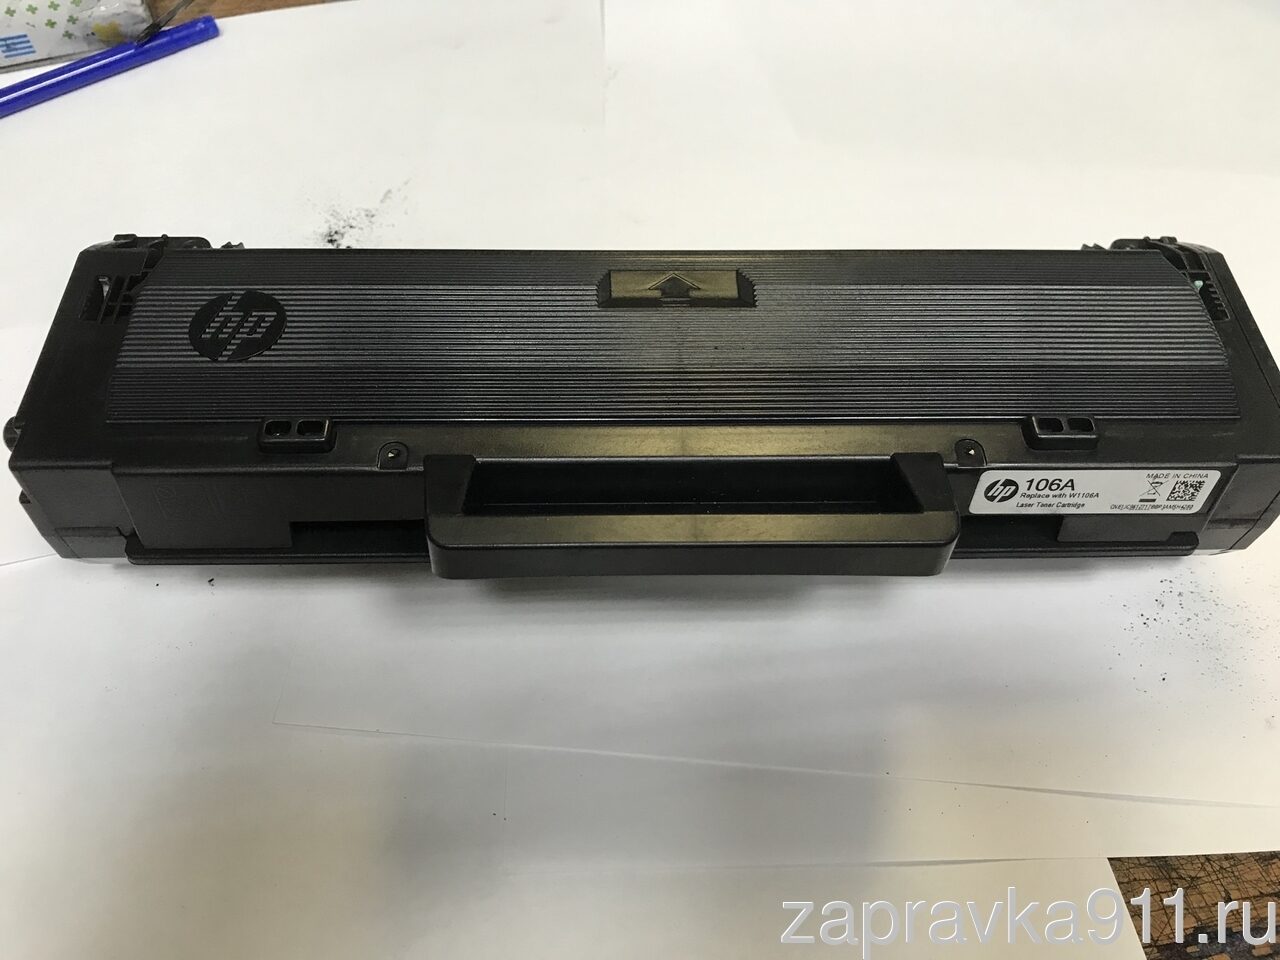 Заправка, ремонт и обслуживание струйных принтеров HP, Canon, Lexmark. Часть I